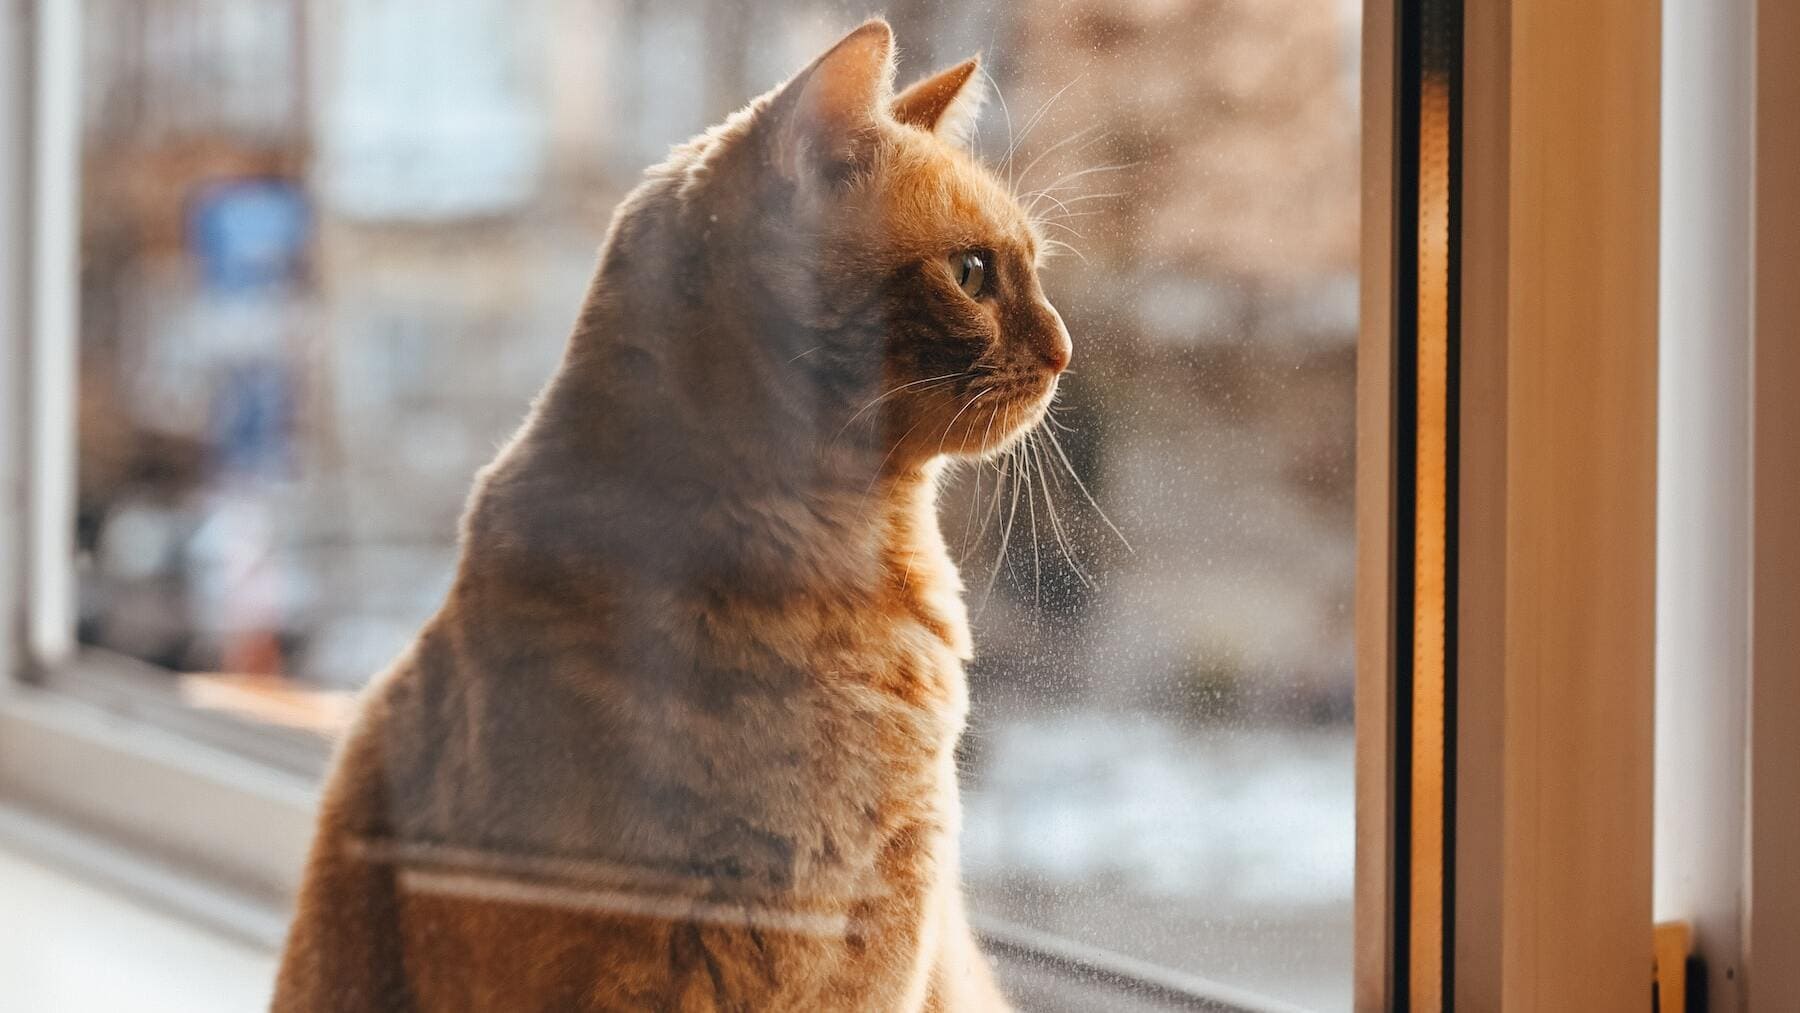 La mejor solución para proteger las ventanas y que el gato no se caiga